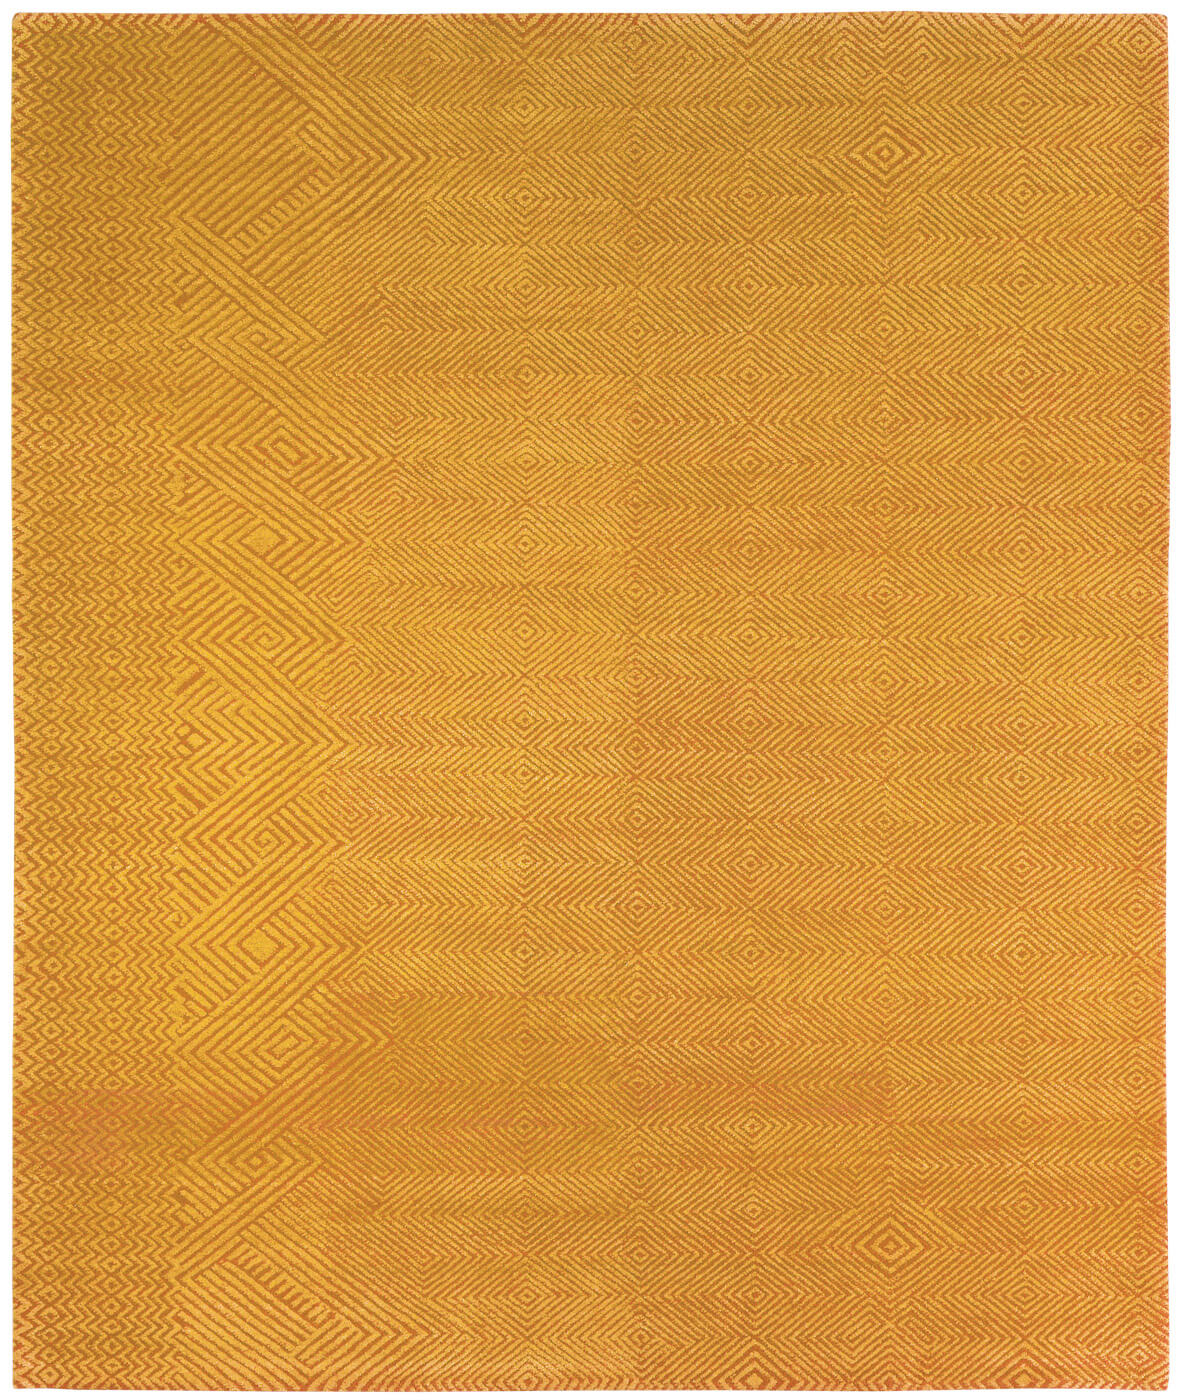 Hand-woven Yellow Luxury Rug ☞ Size: 300 x 400 cm